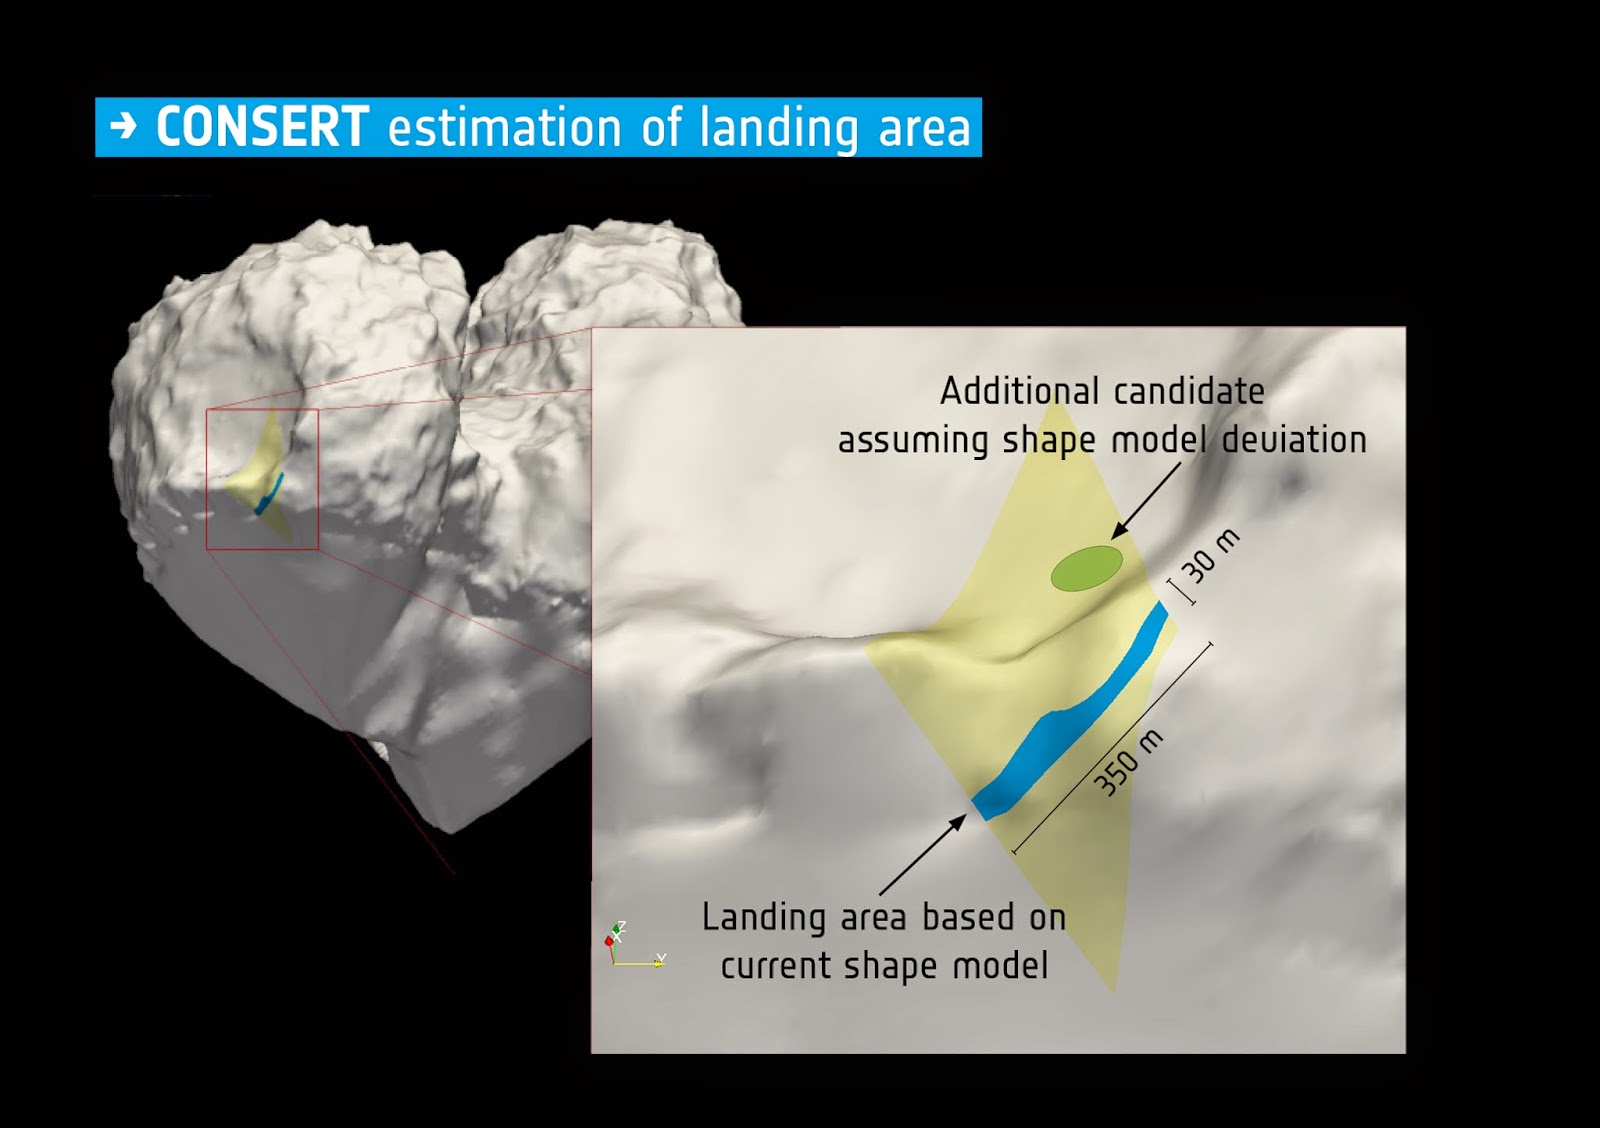 ESA_Rosetta_Philae_CONSERT_landingsiteestimate.jpeg